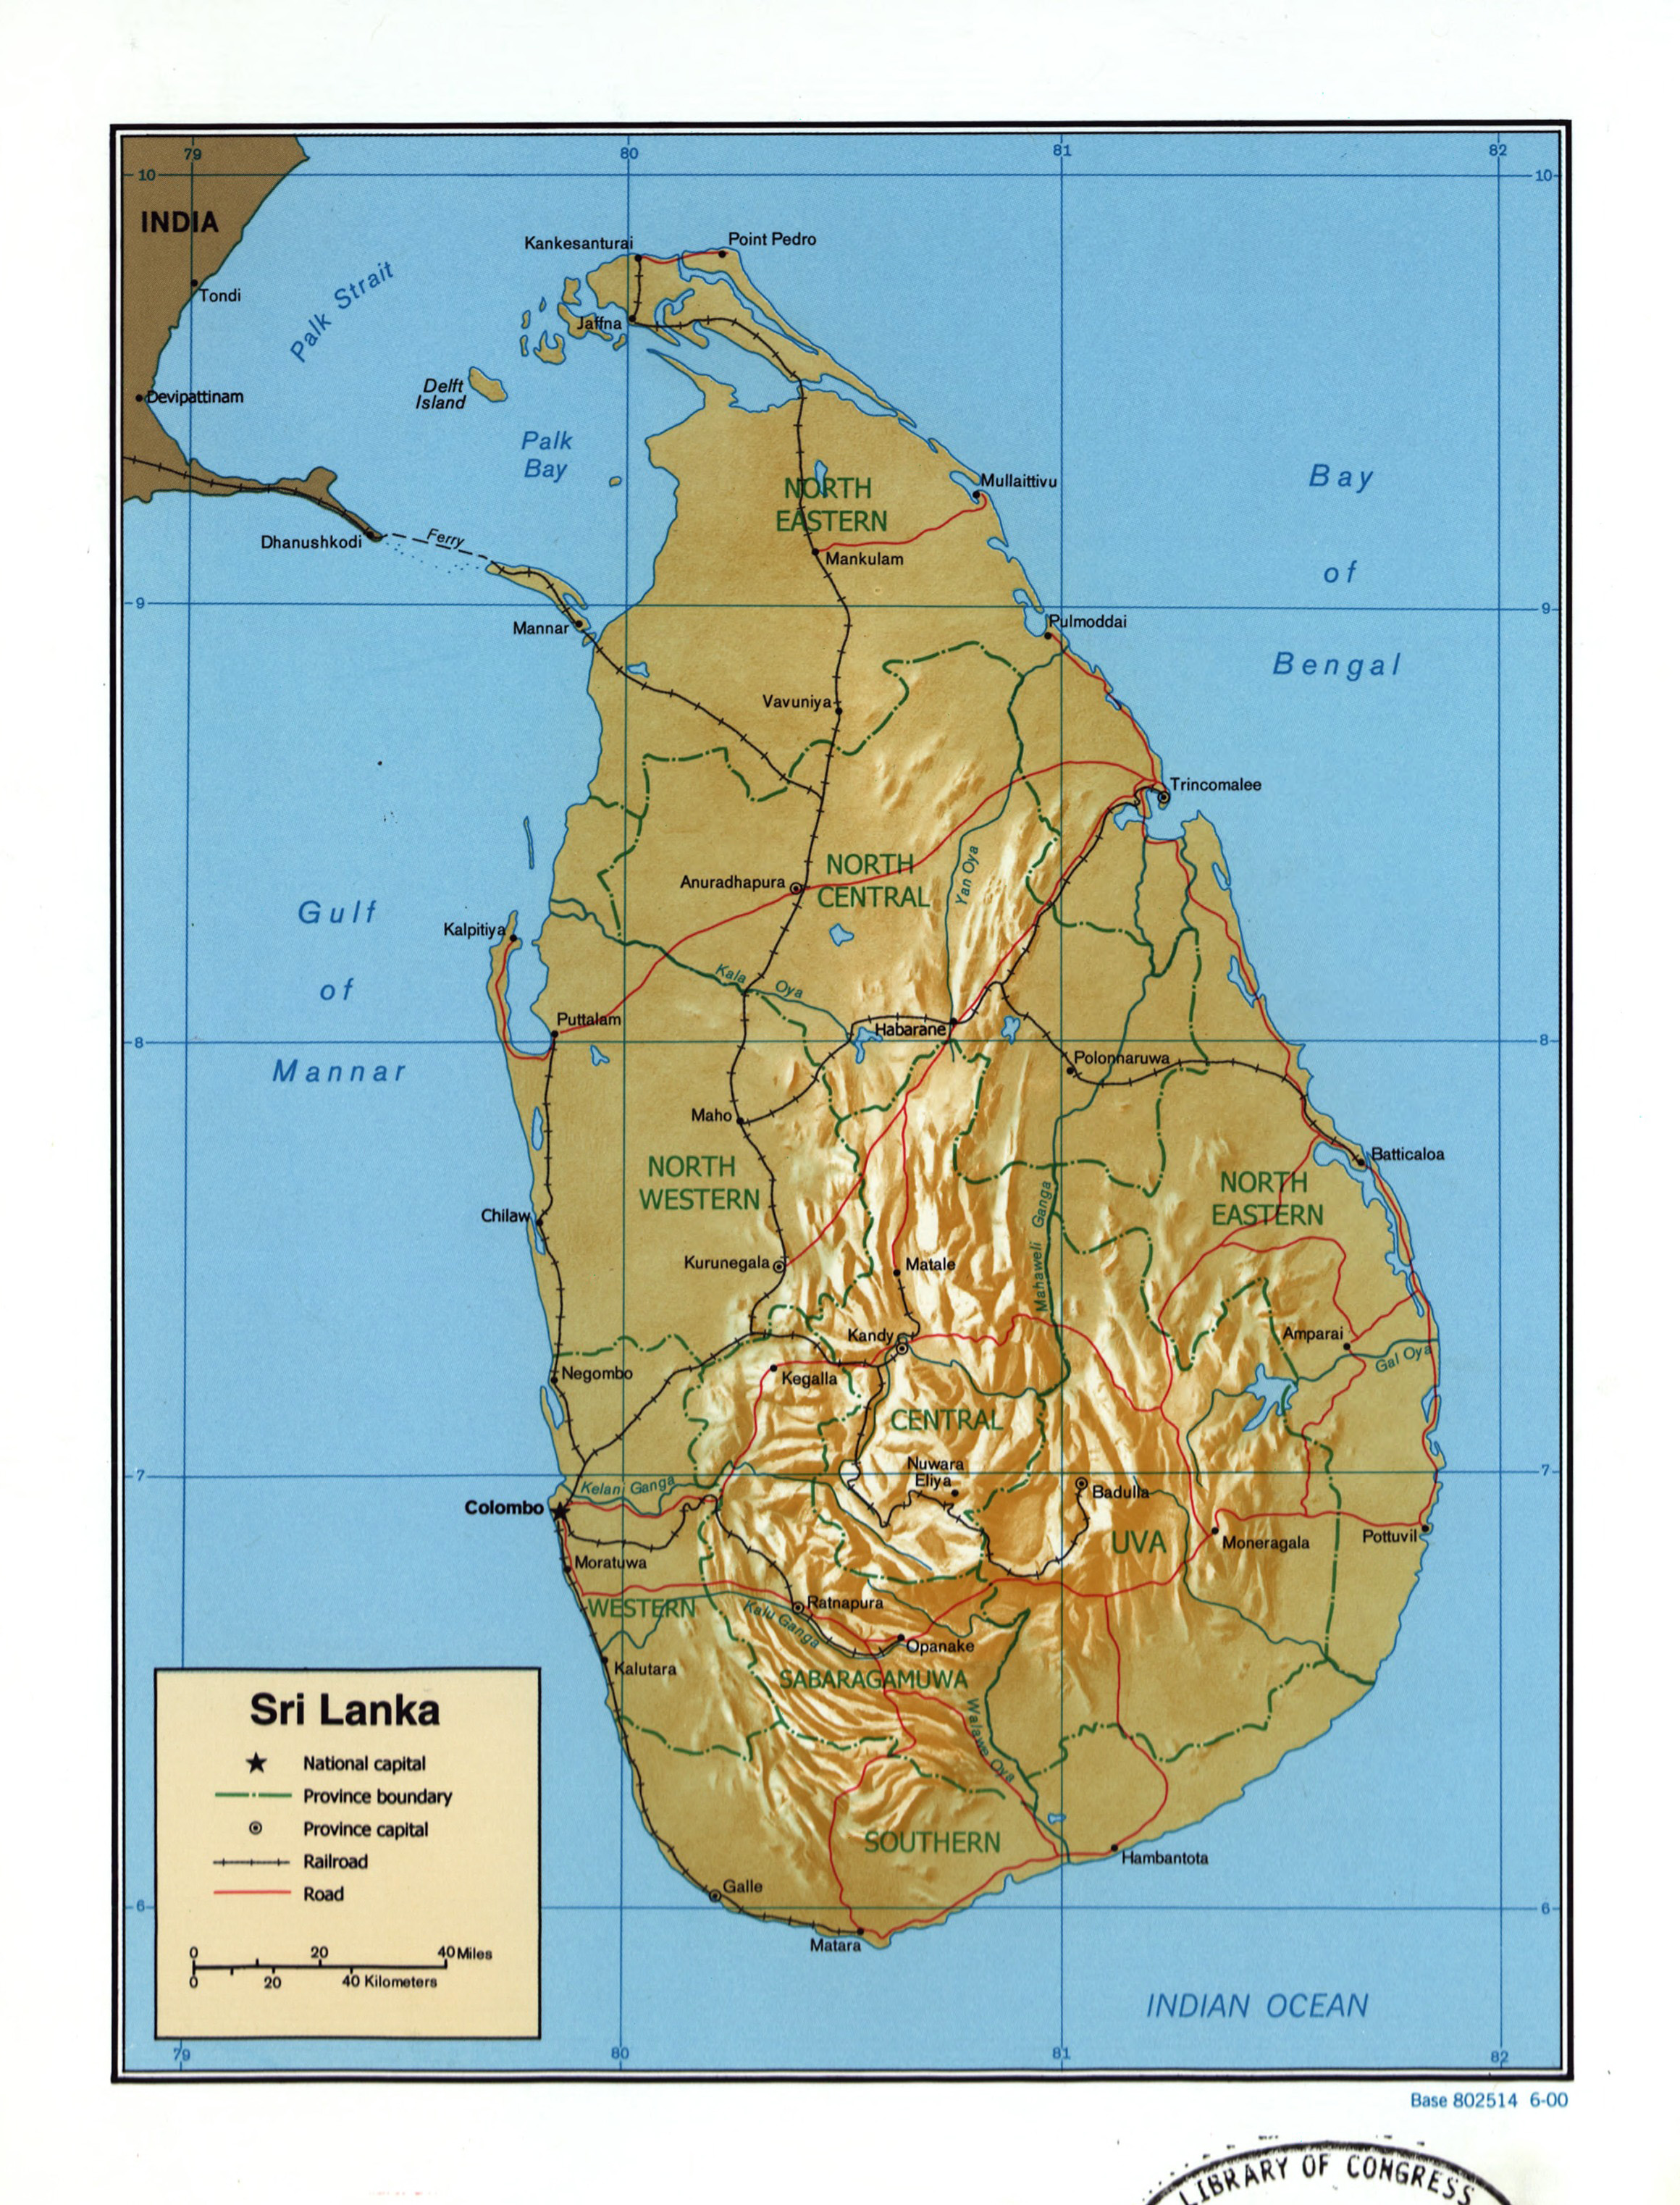 Grande detallado mapa político y administrativo de Sri Lanka con